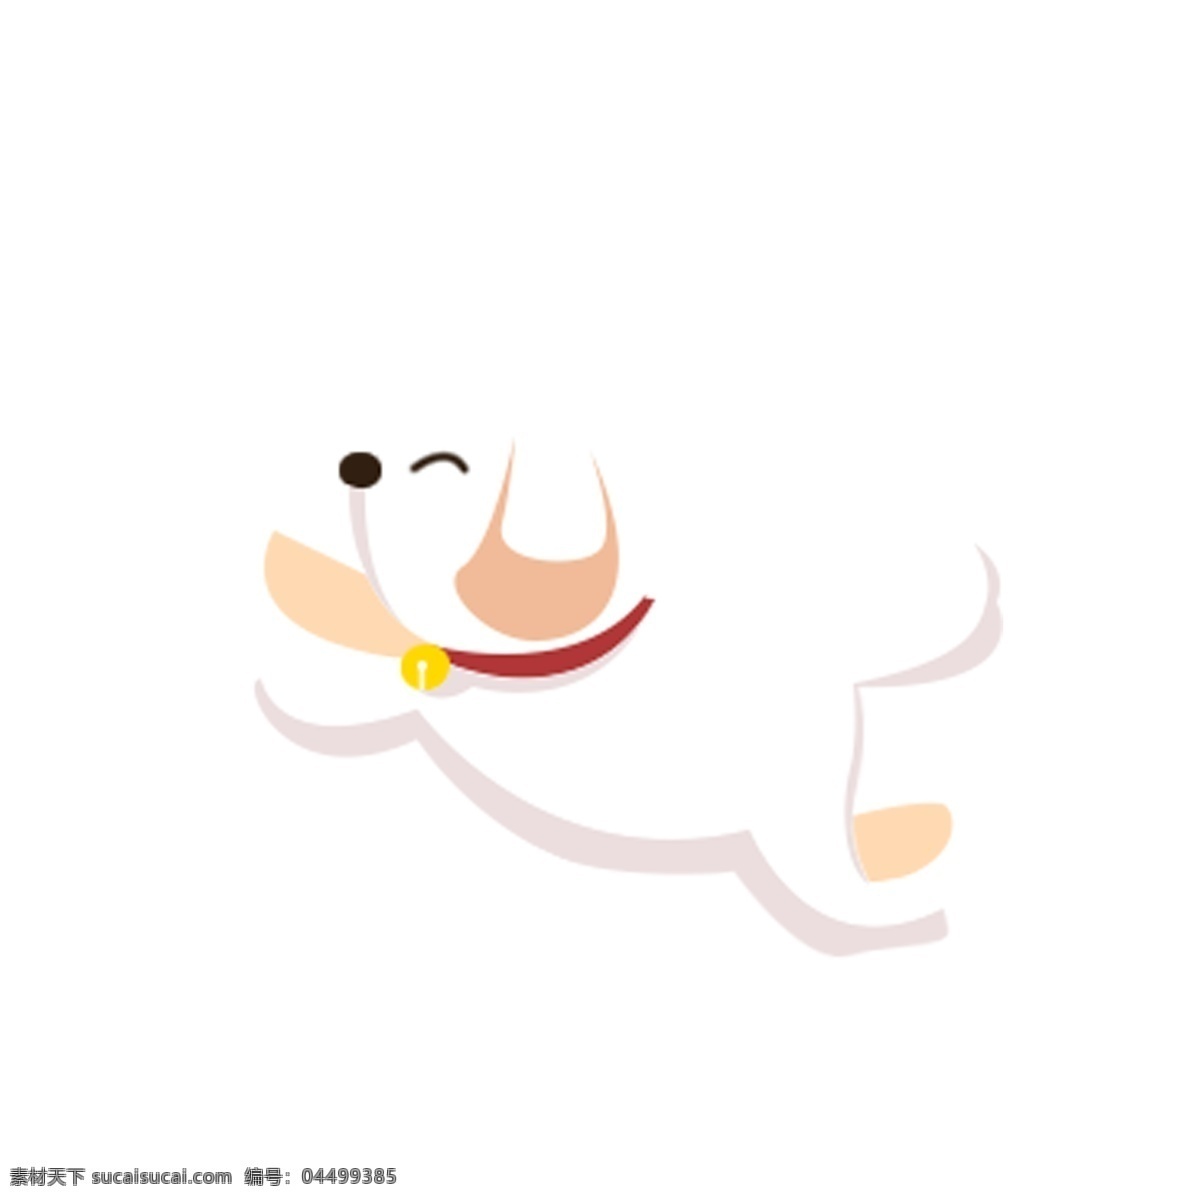 白色 小狗 免 抠 图 卡通宠物狗 卡通动物 动物插画 小狗狗 跳跃的小狗 宠物 狗 小动物 卡通 可爱 免抠图